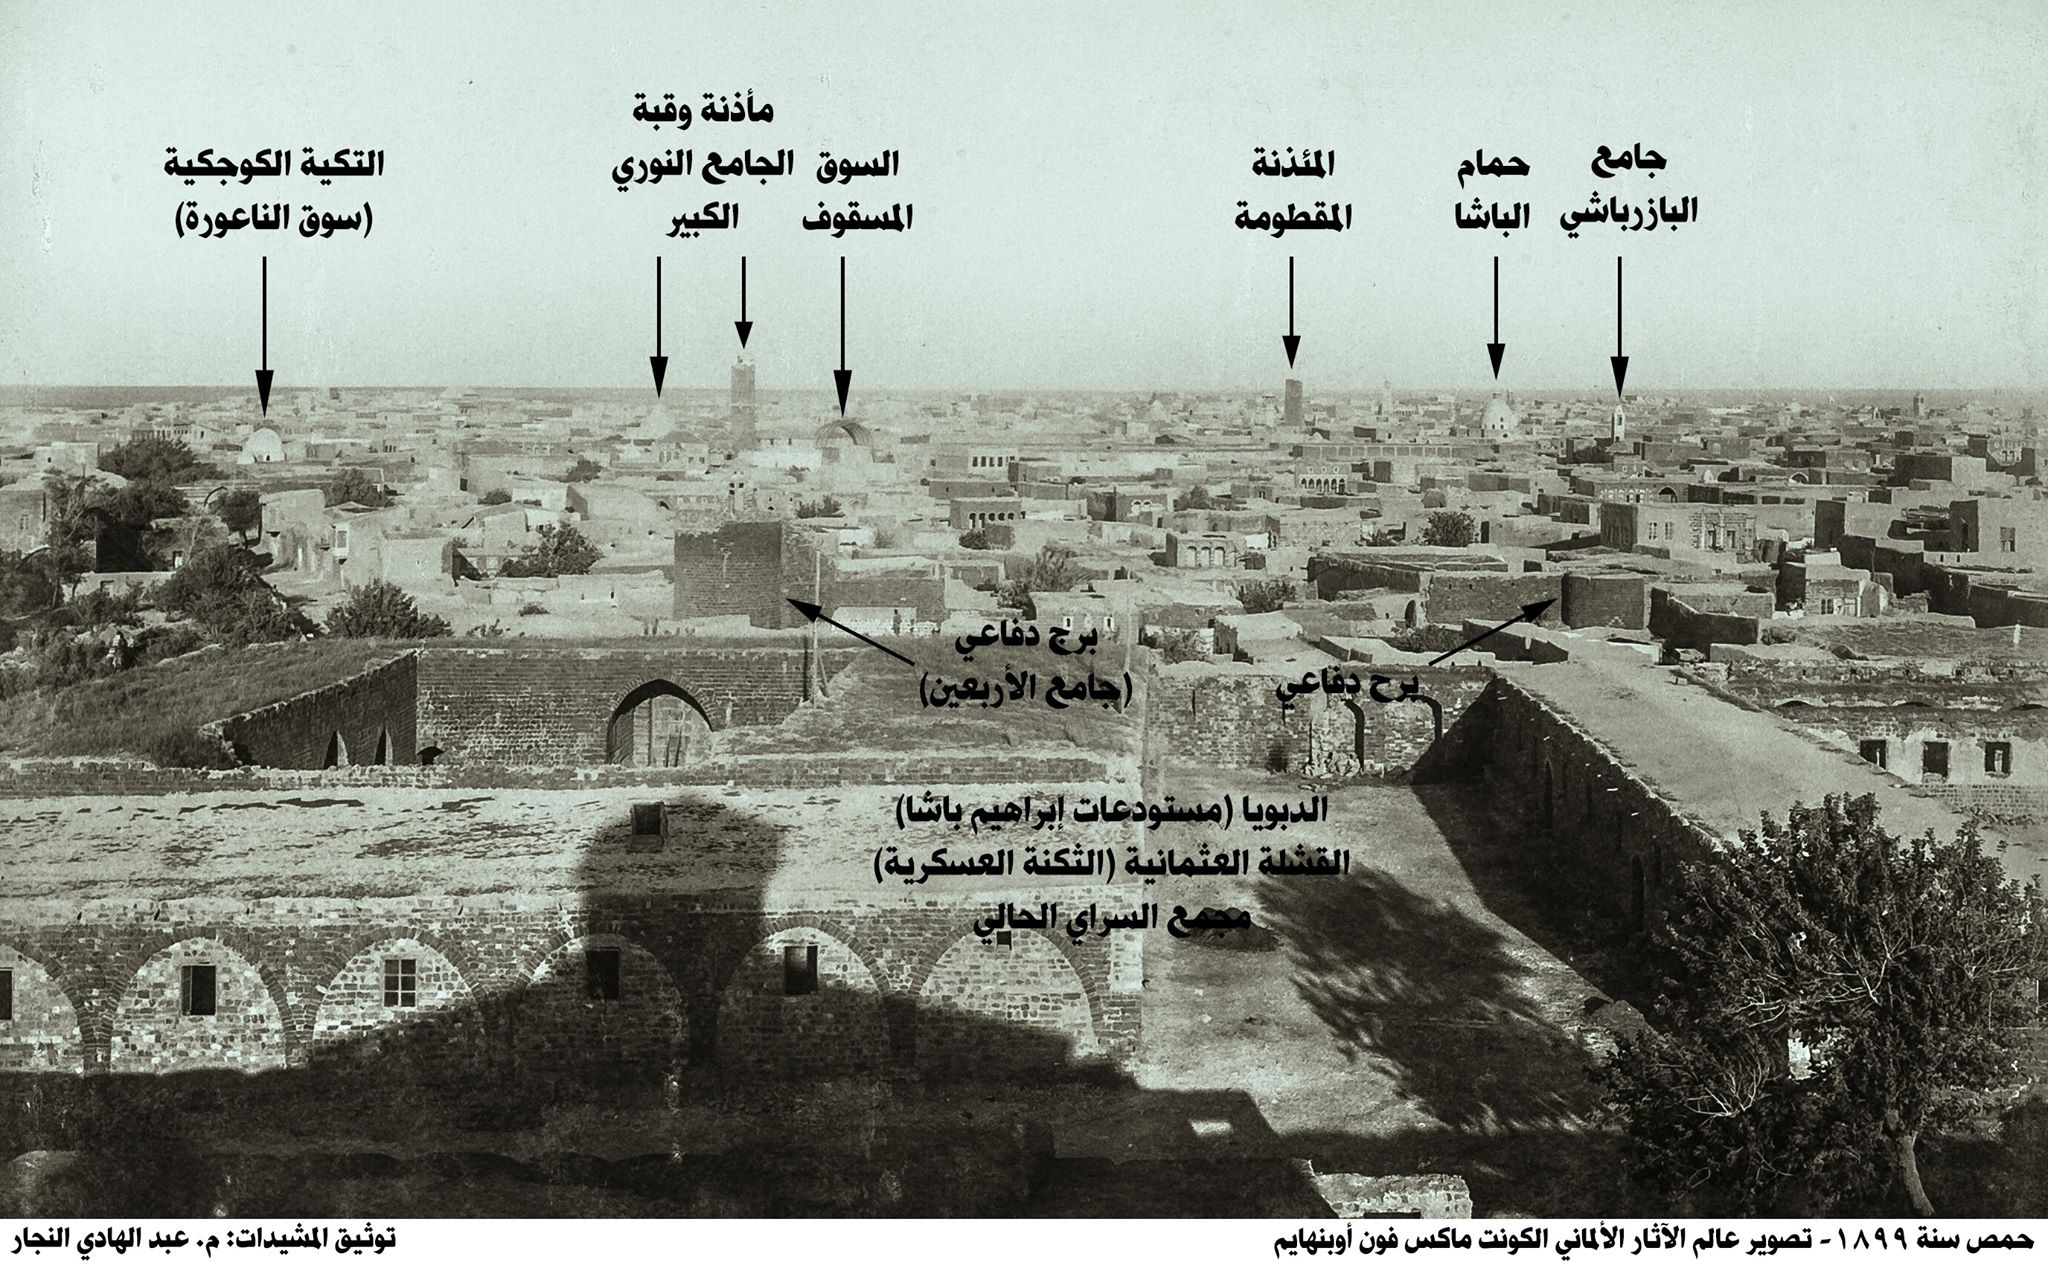 مدينة حمص سنة 1899 من تصوير ماكس فون أوبنهايم 2